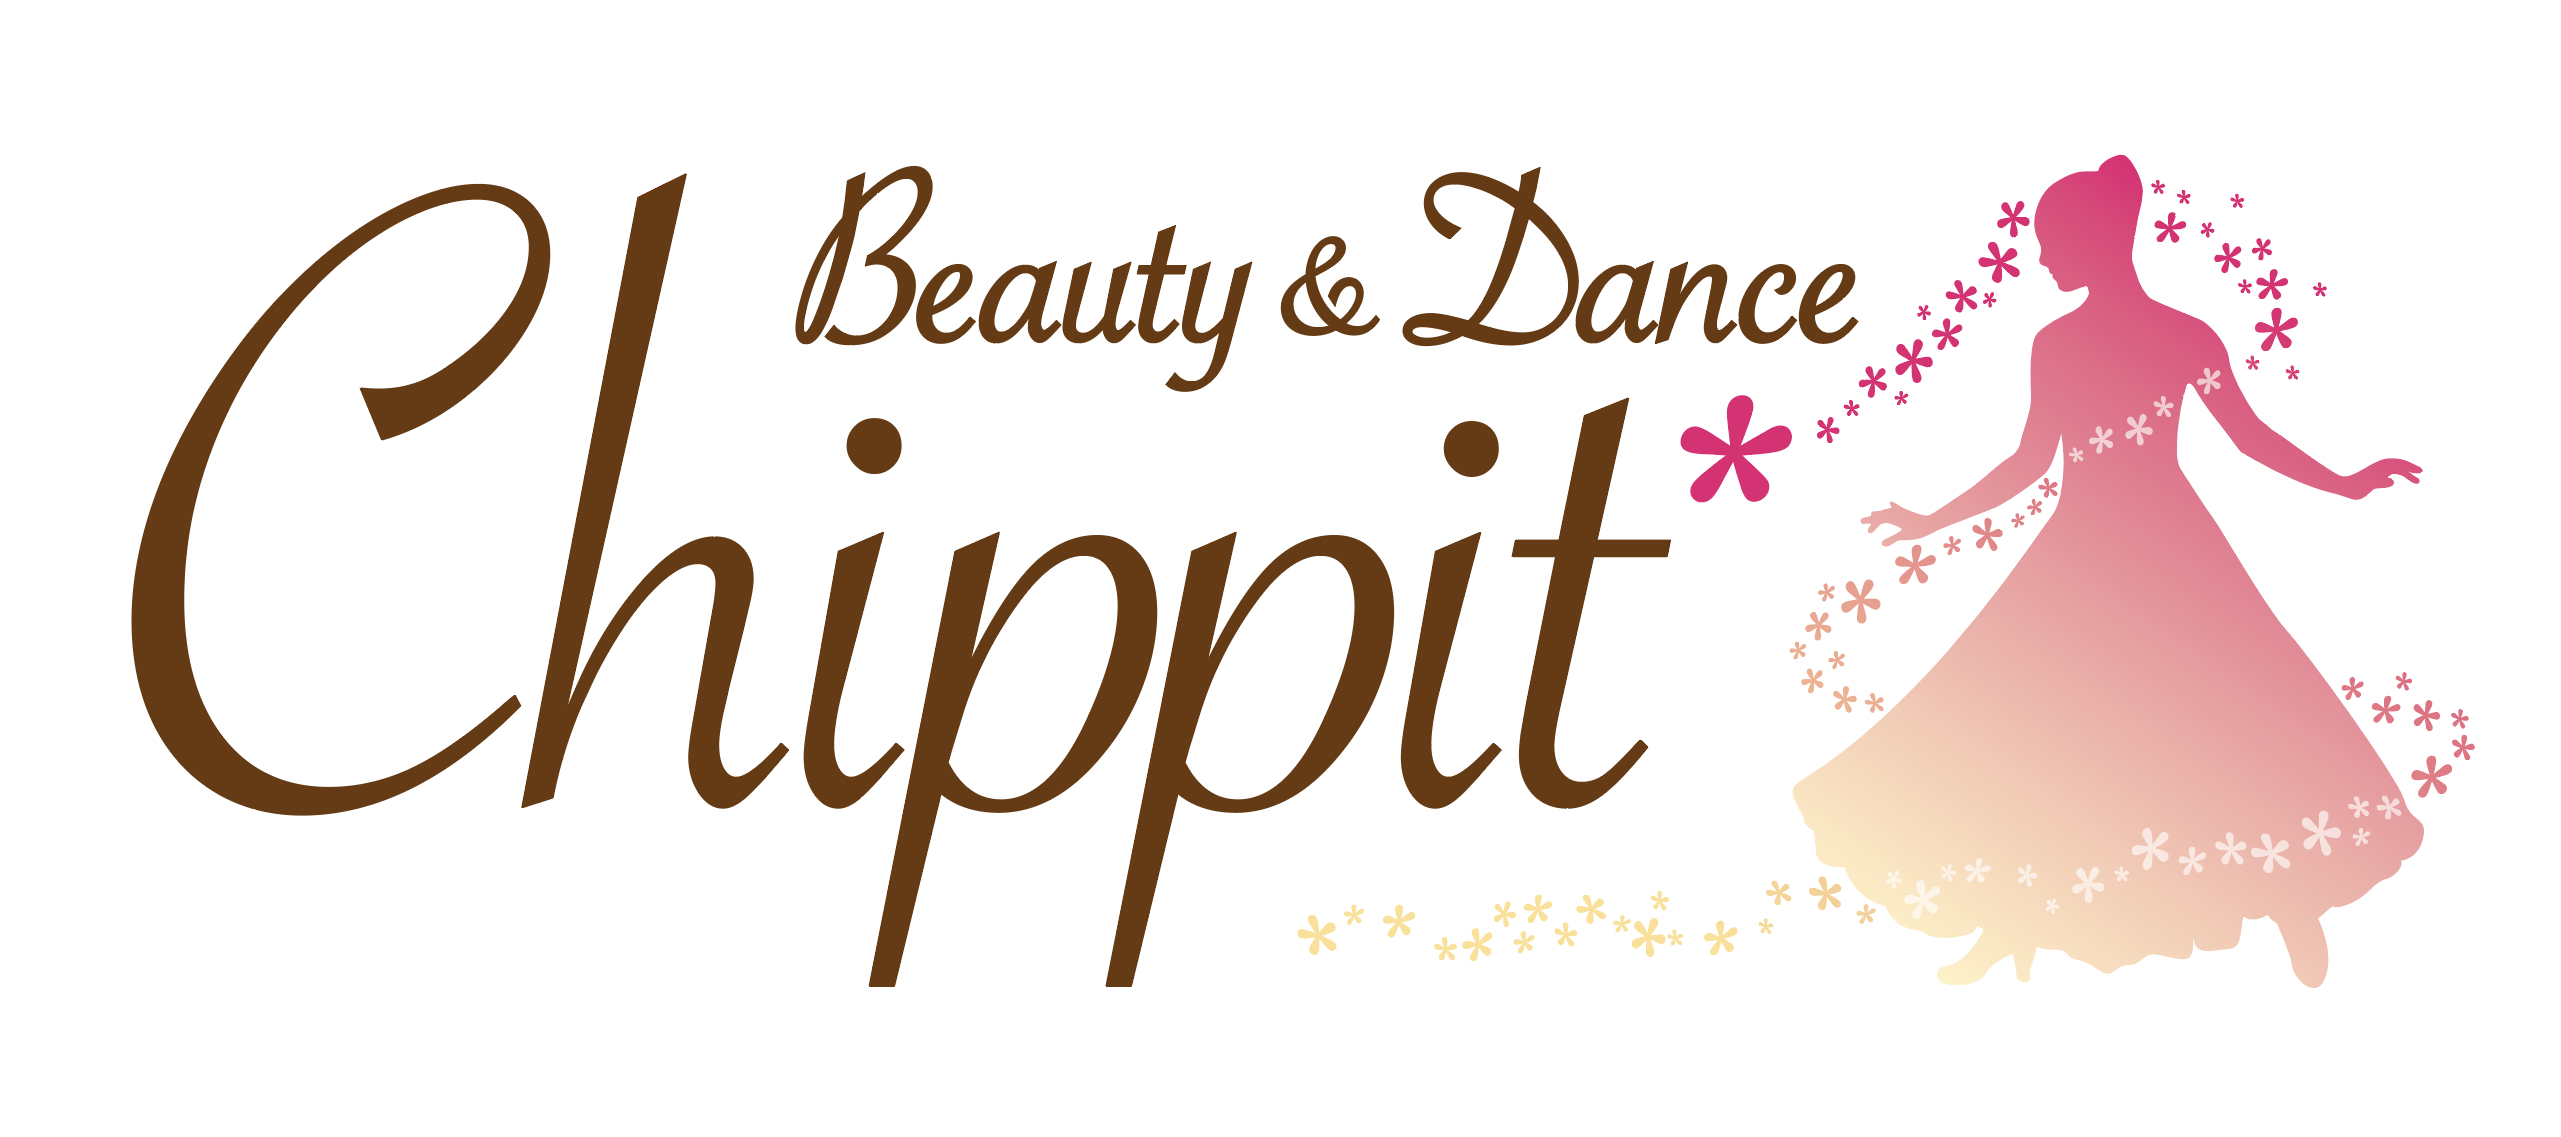 Beauty&Dance Chippit*